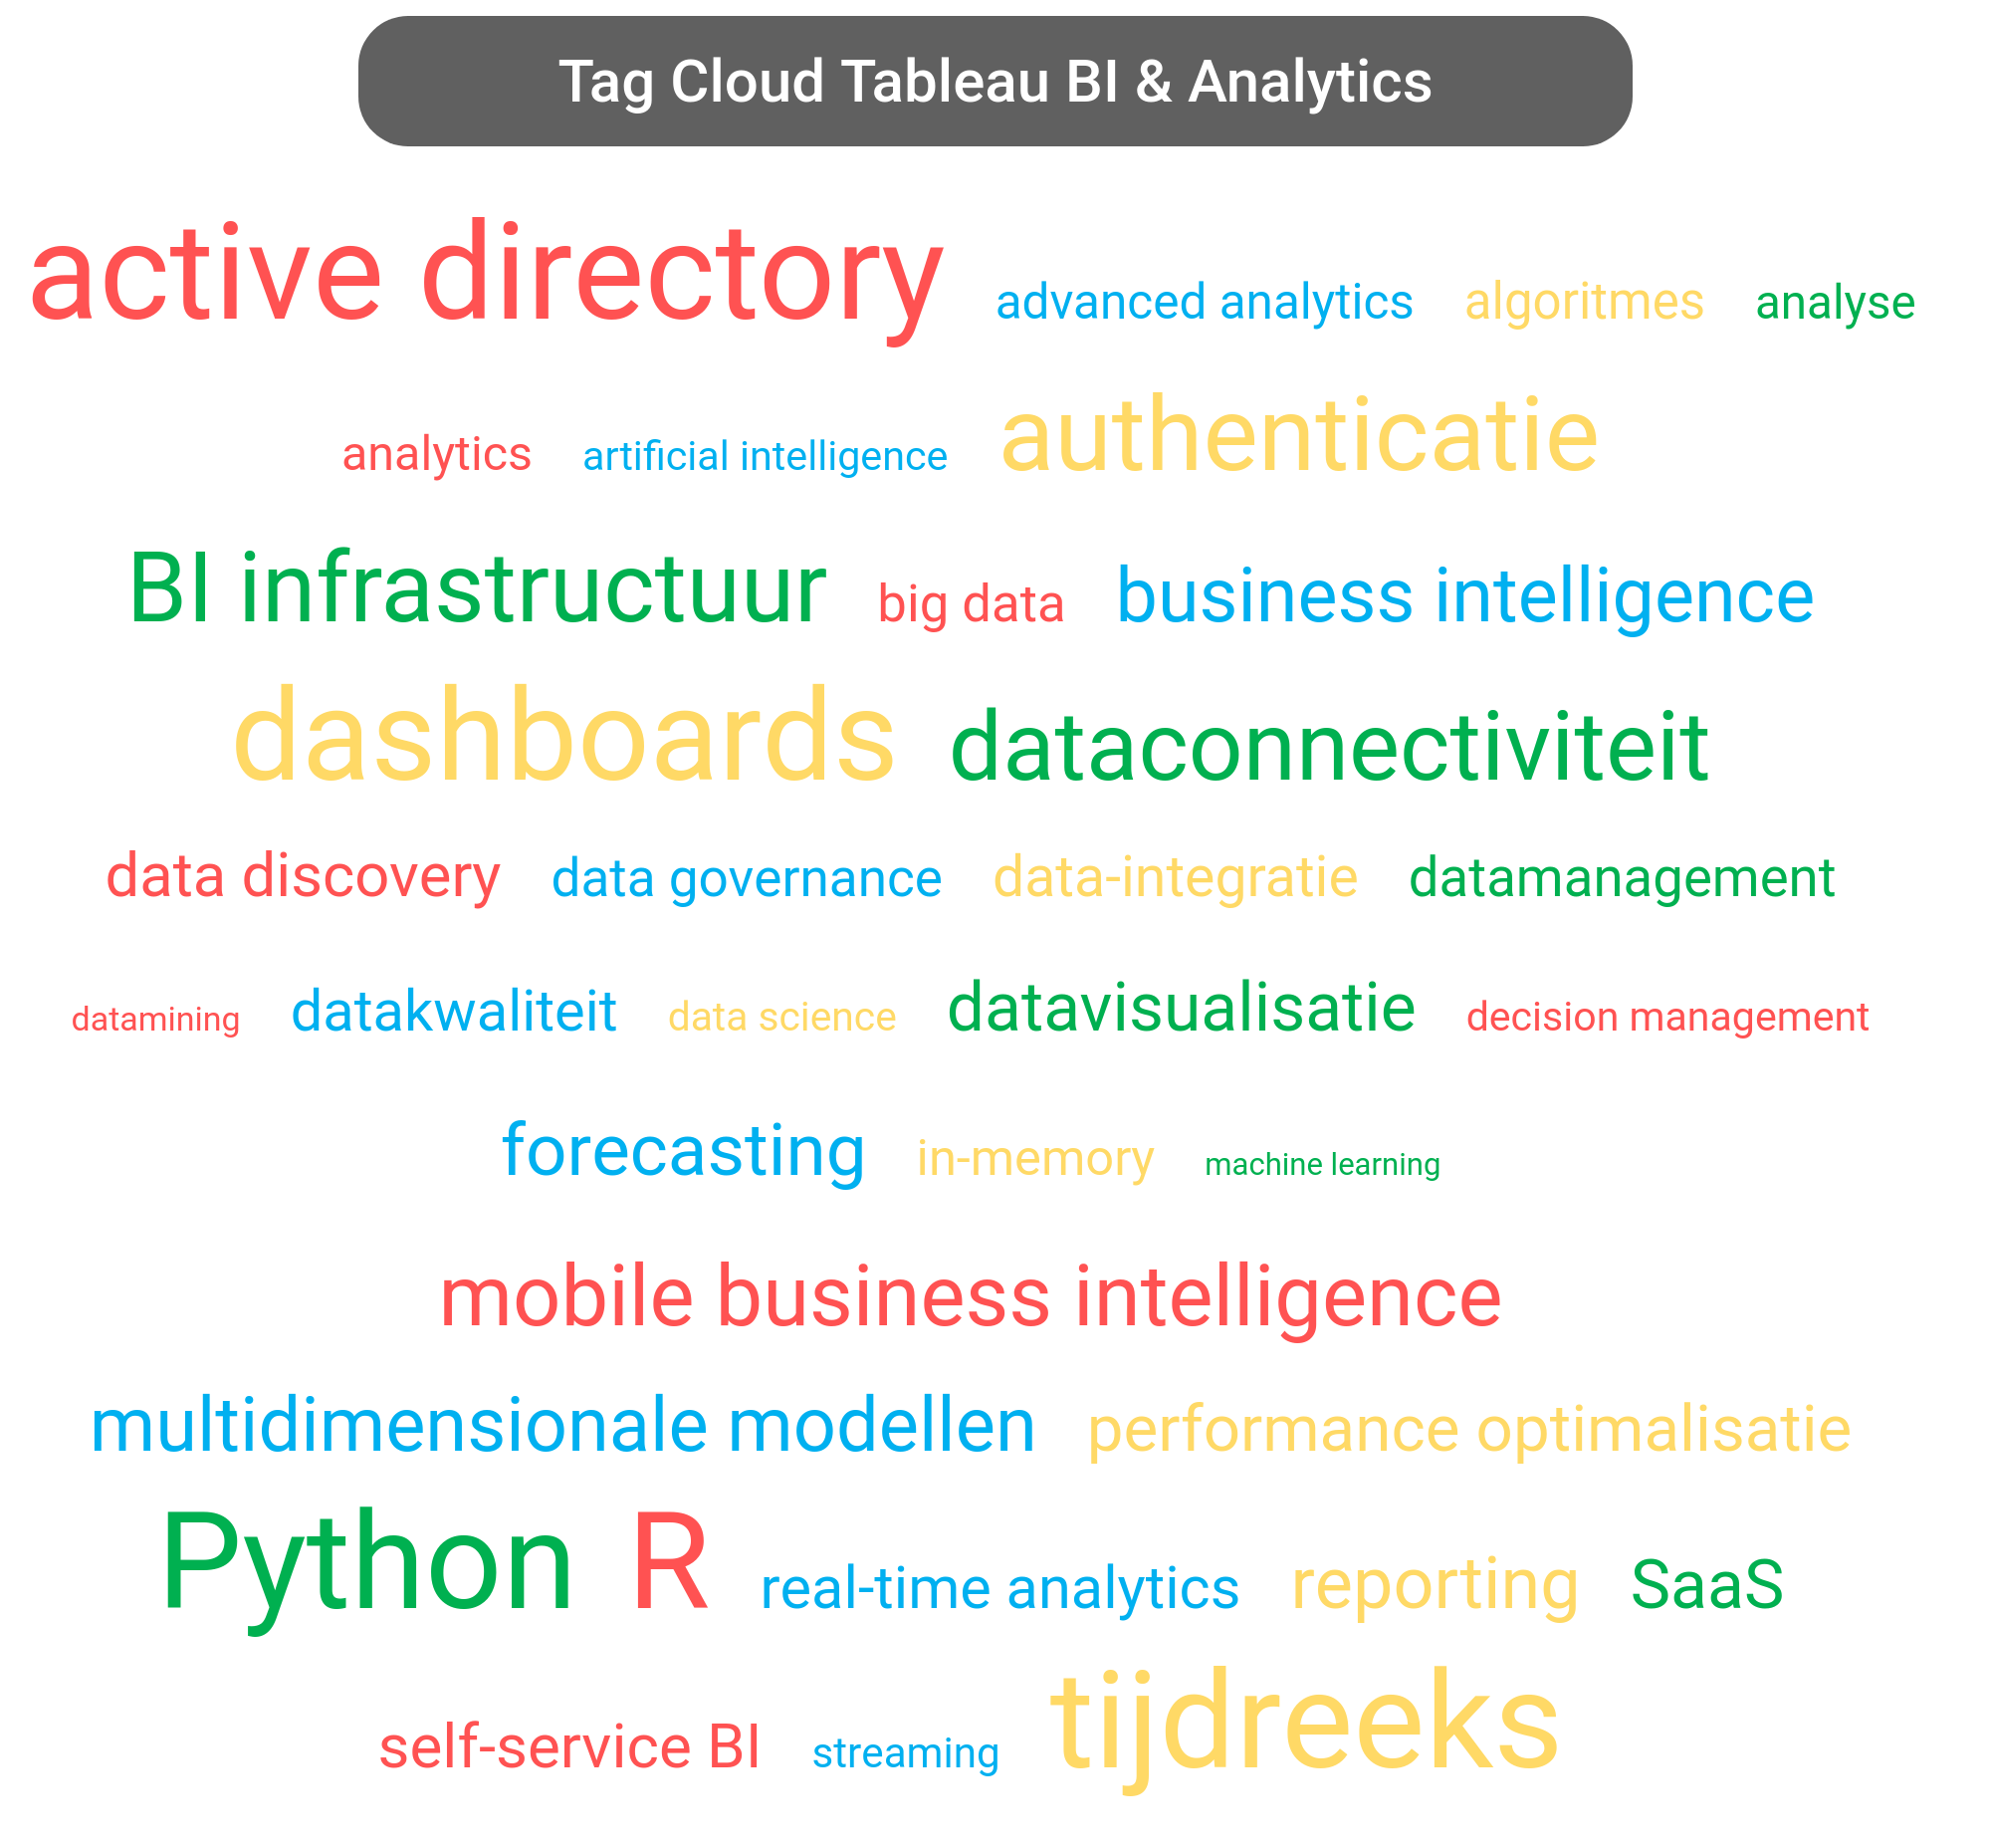 Tag cloud van Tableau Business Intelligence tools.